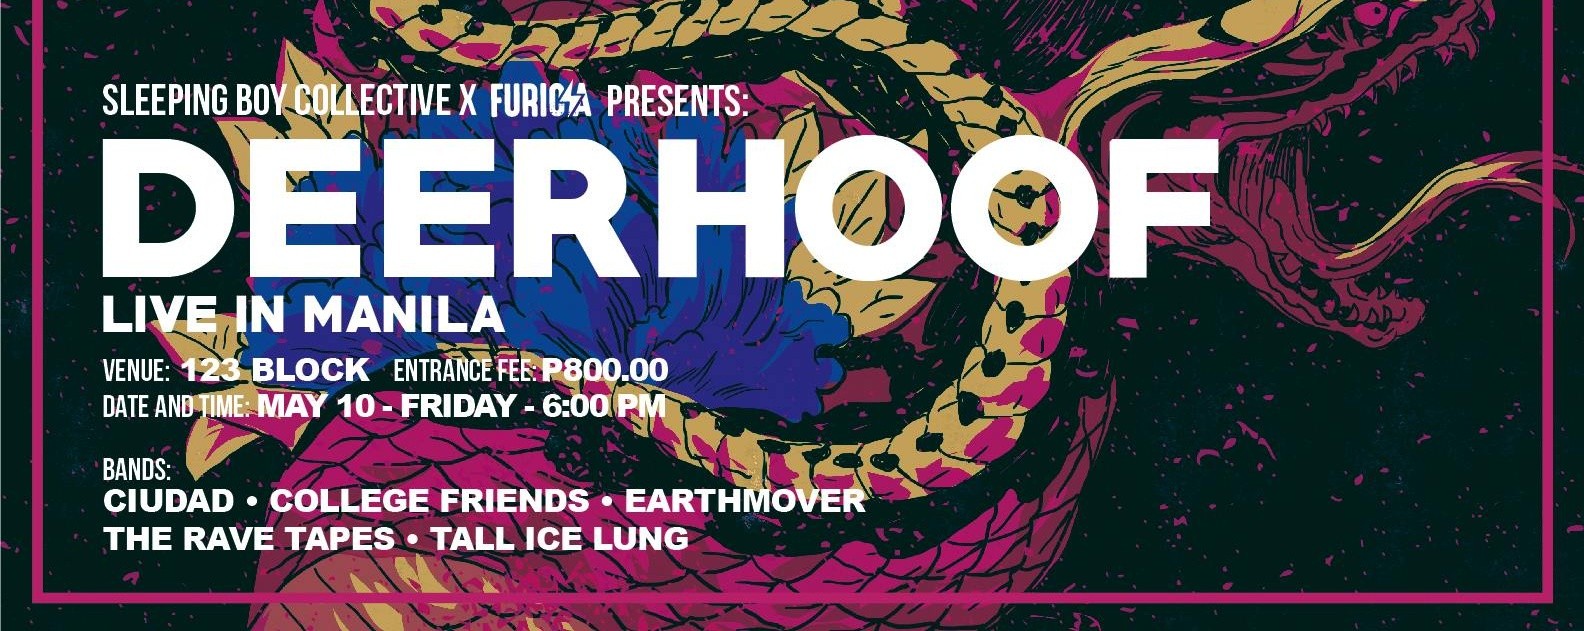 Sleeping Boy Collective X Furiosa: Deerhoof Live in Manila